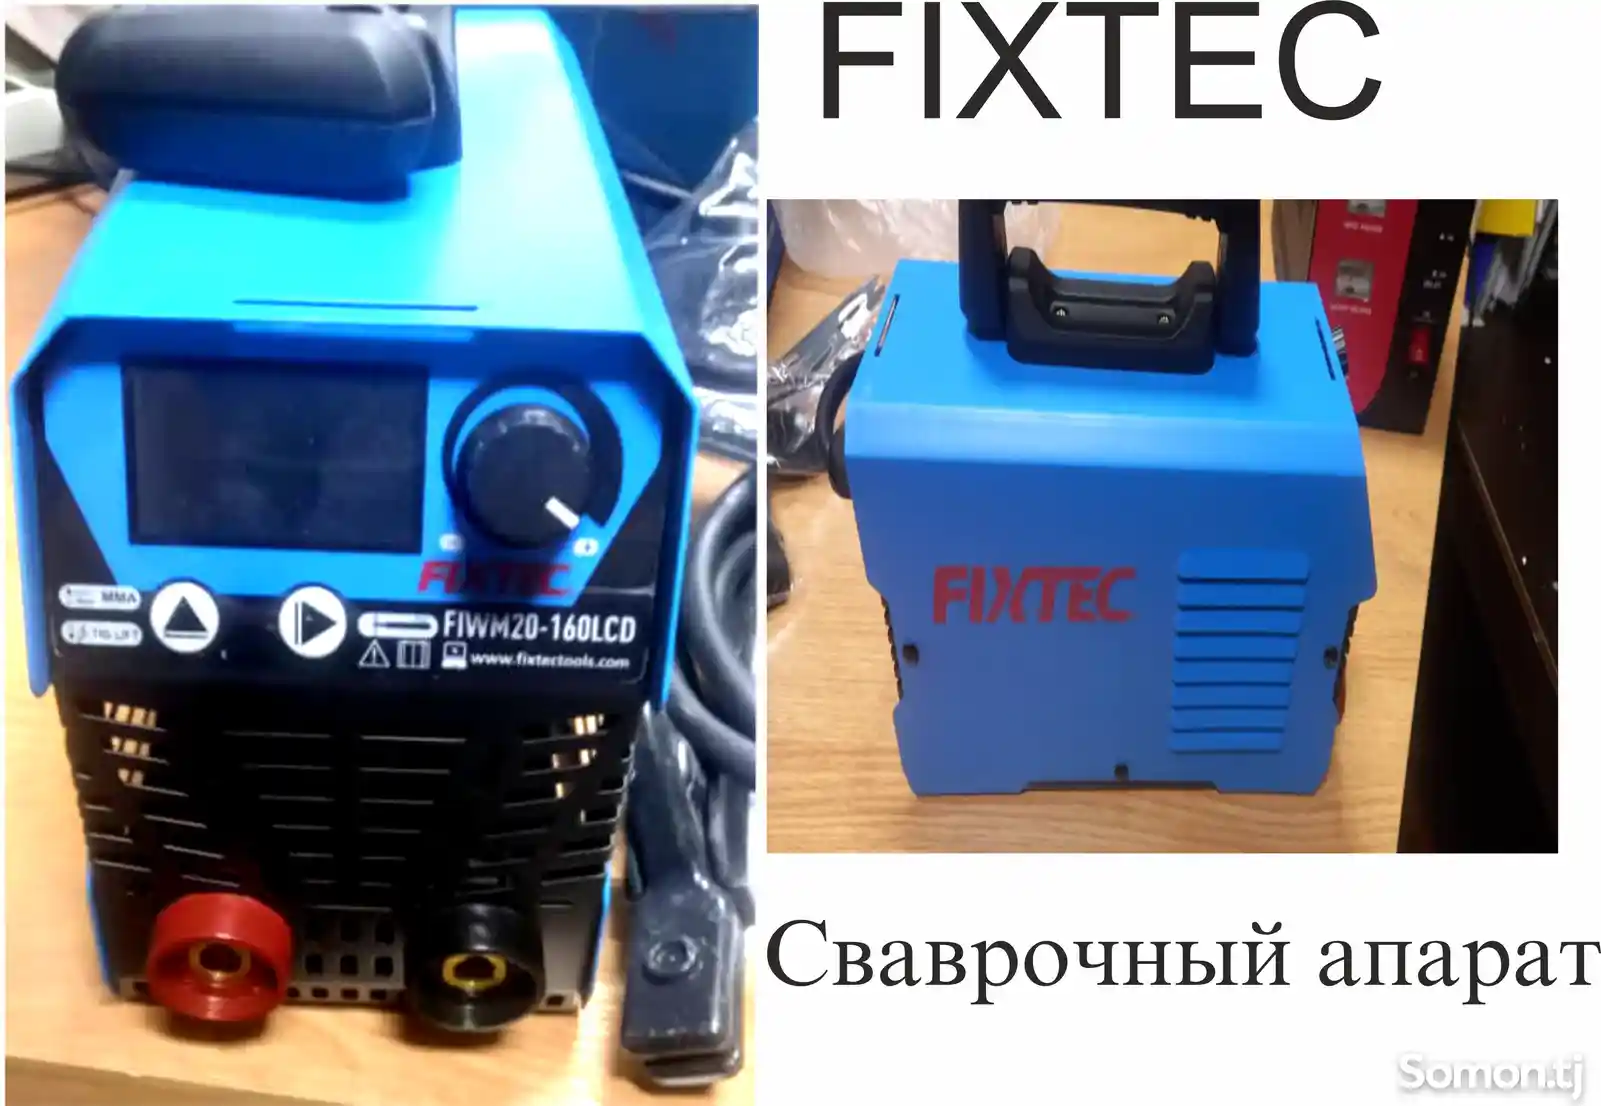 Сварочный апарат Fixtec-3